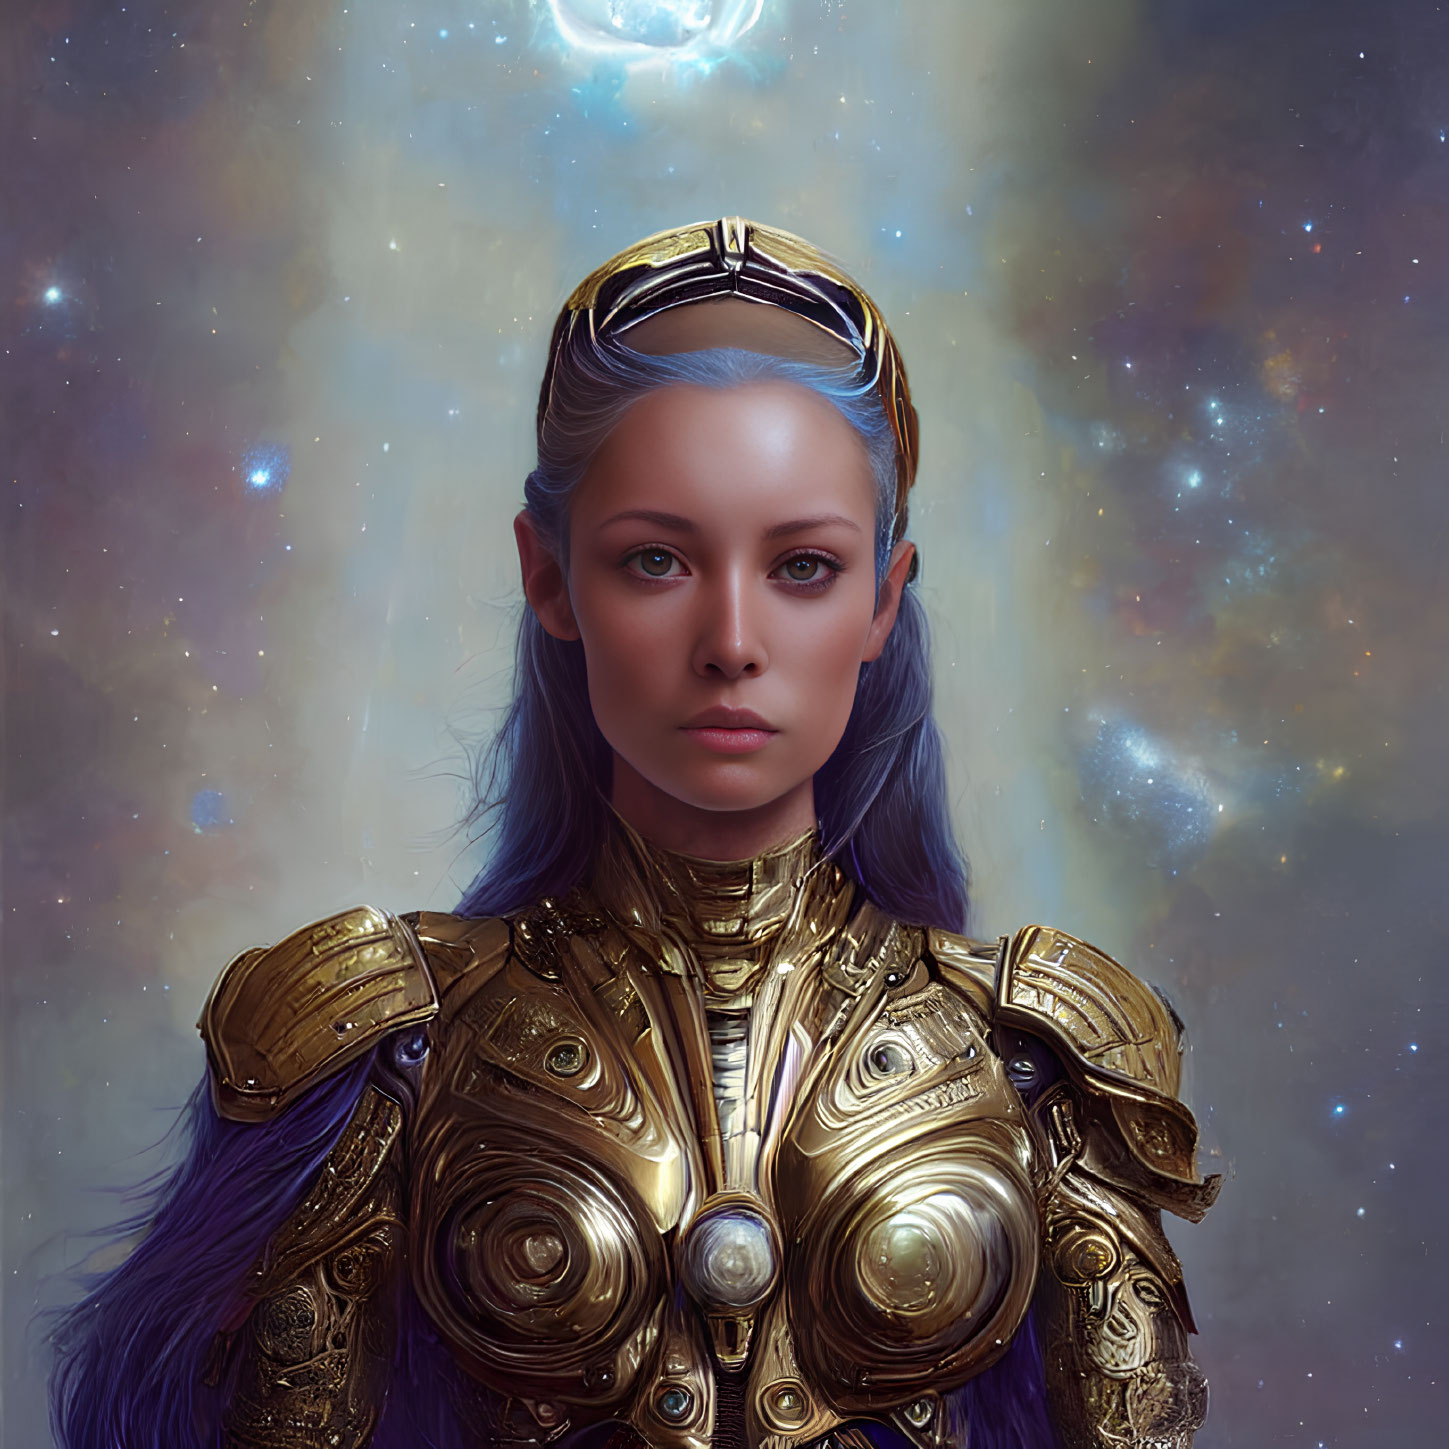 Blue-skinned female character in golden armor on cosmic background